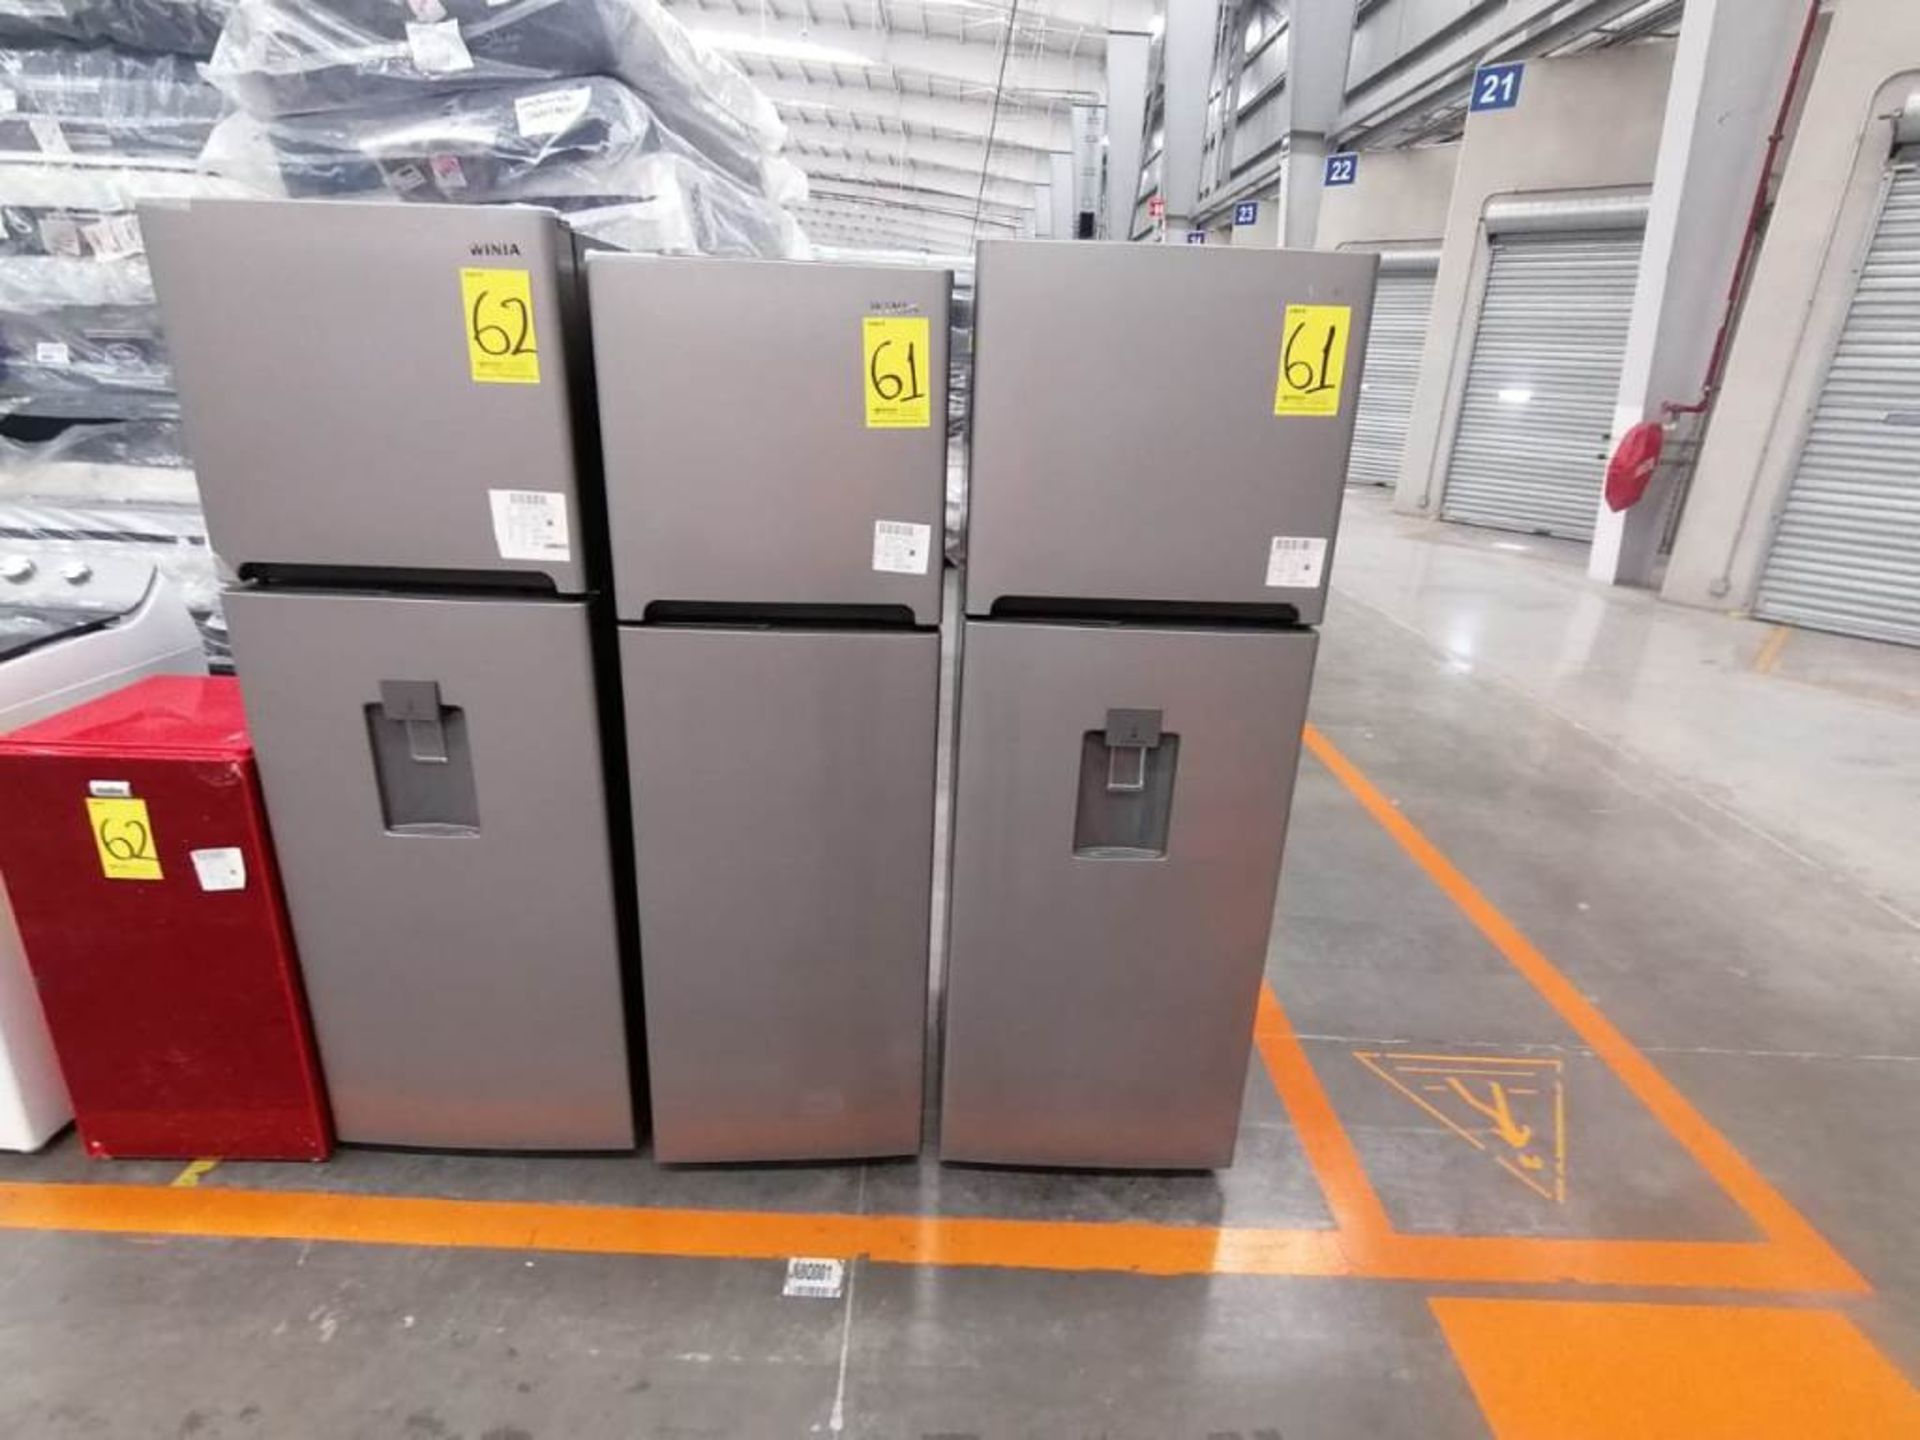 Lote de 2 Refrigeradores, Contiene 1 Refrigerador Marca Winia, Color Gris, Dos Puertas, Despachador - Image 5 of 13